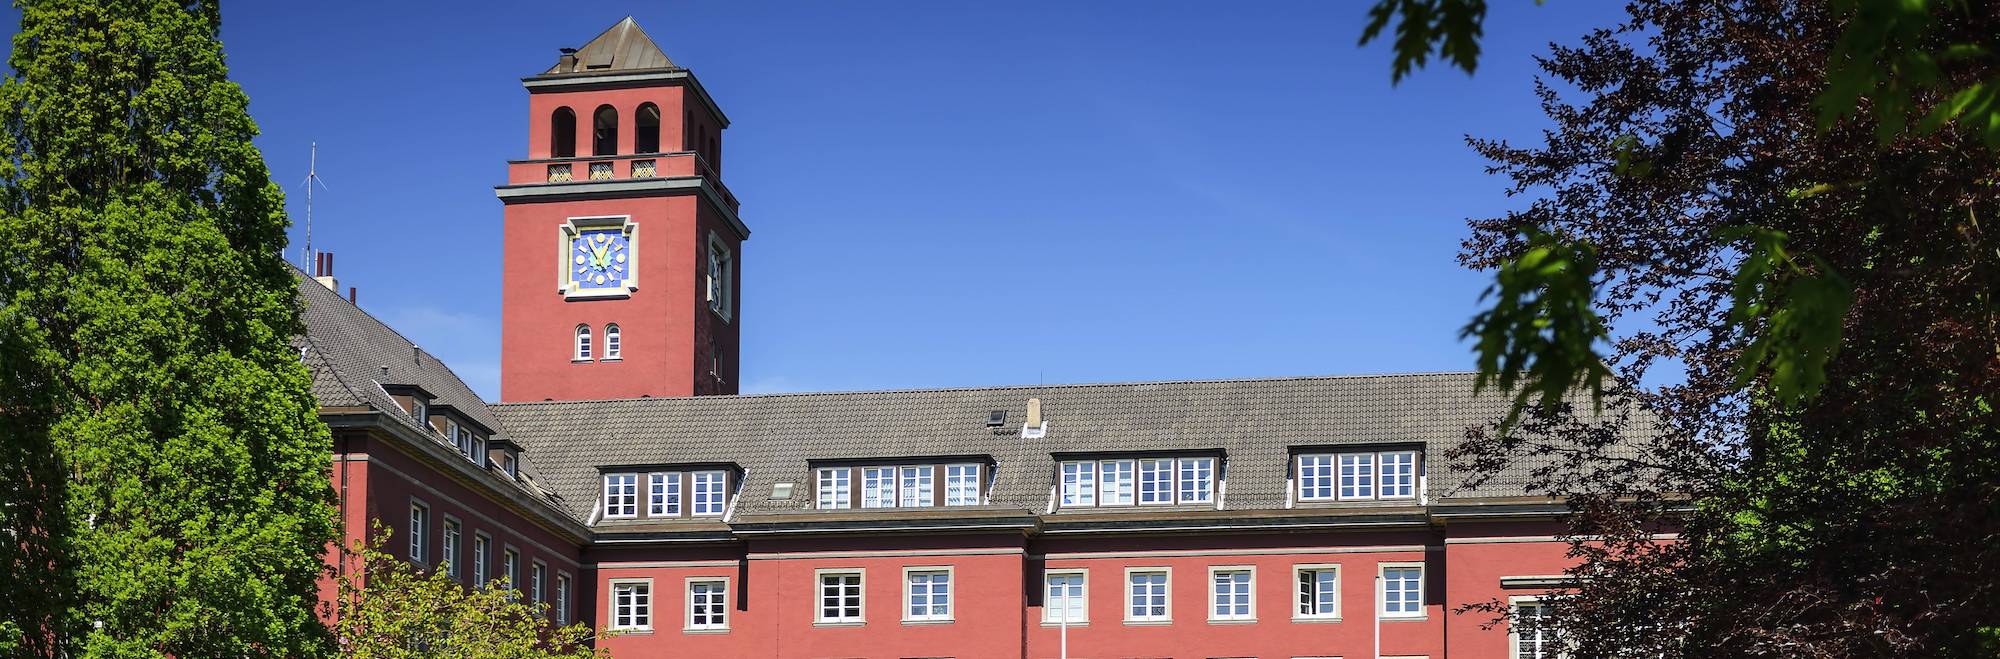 Ein historisches Gebäude in roter Farbe.